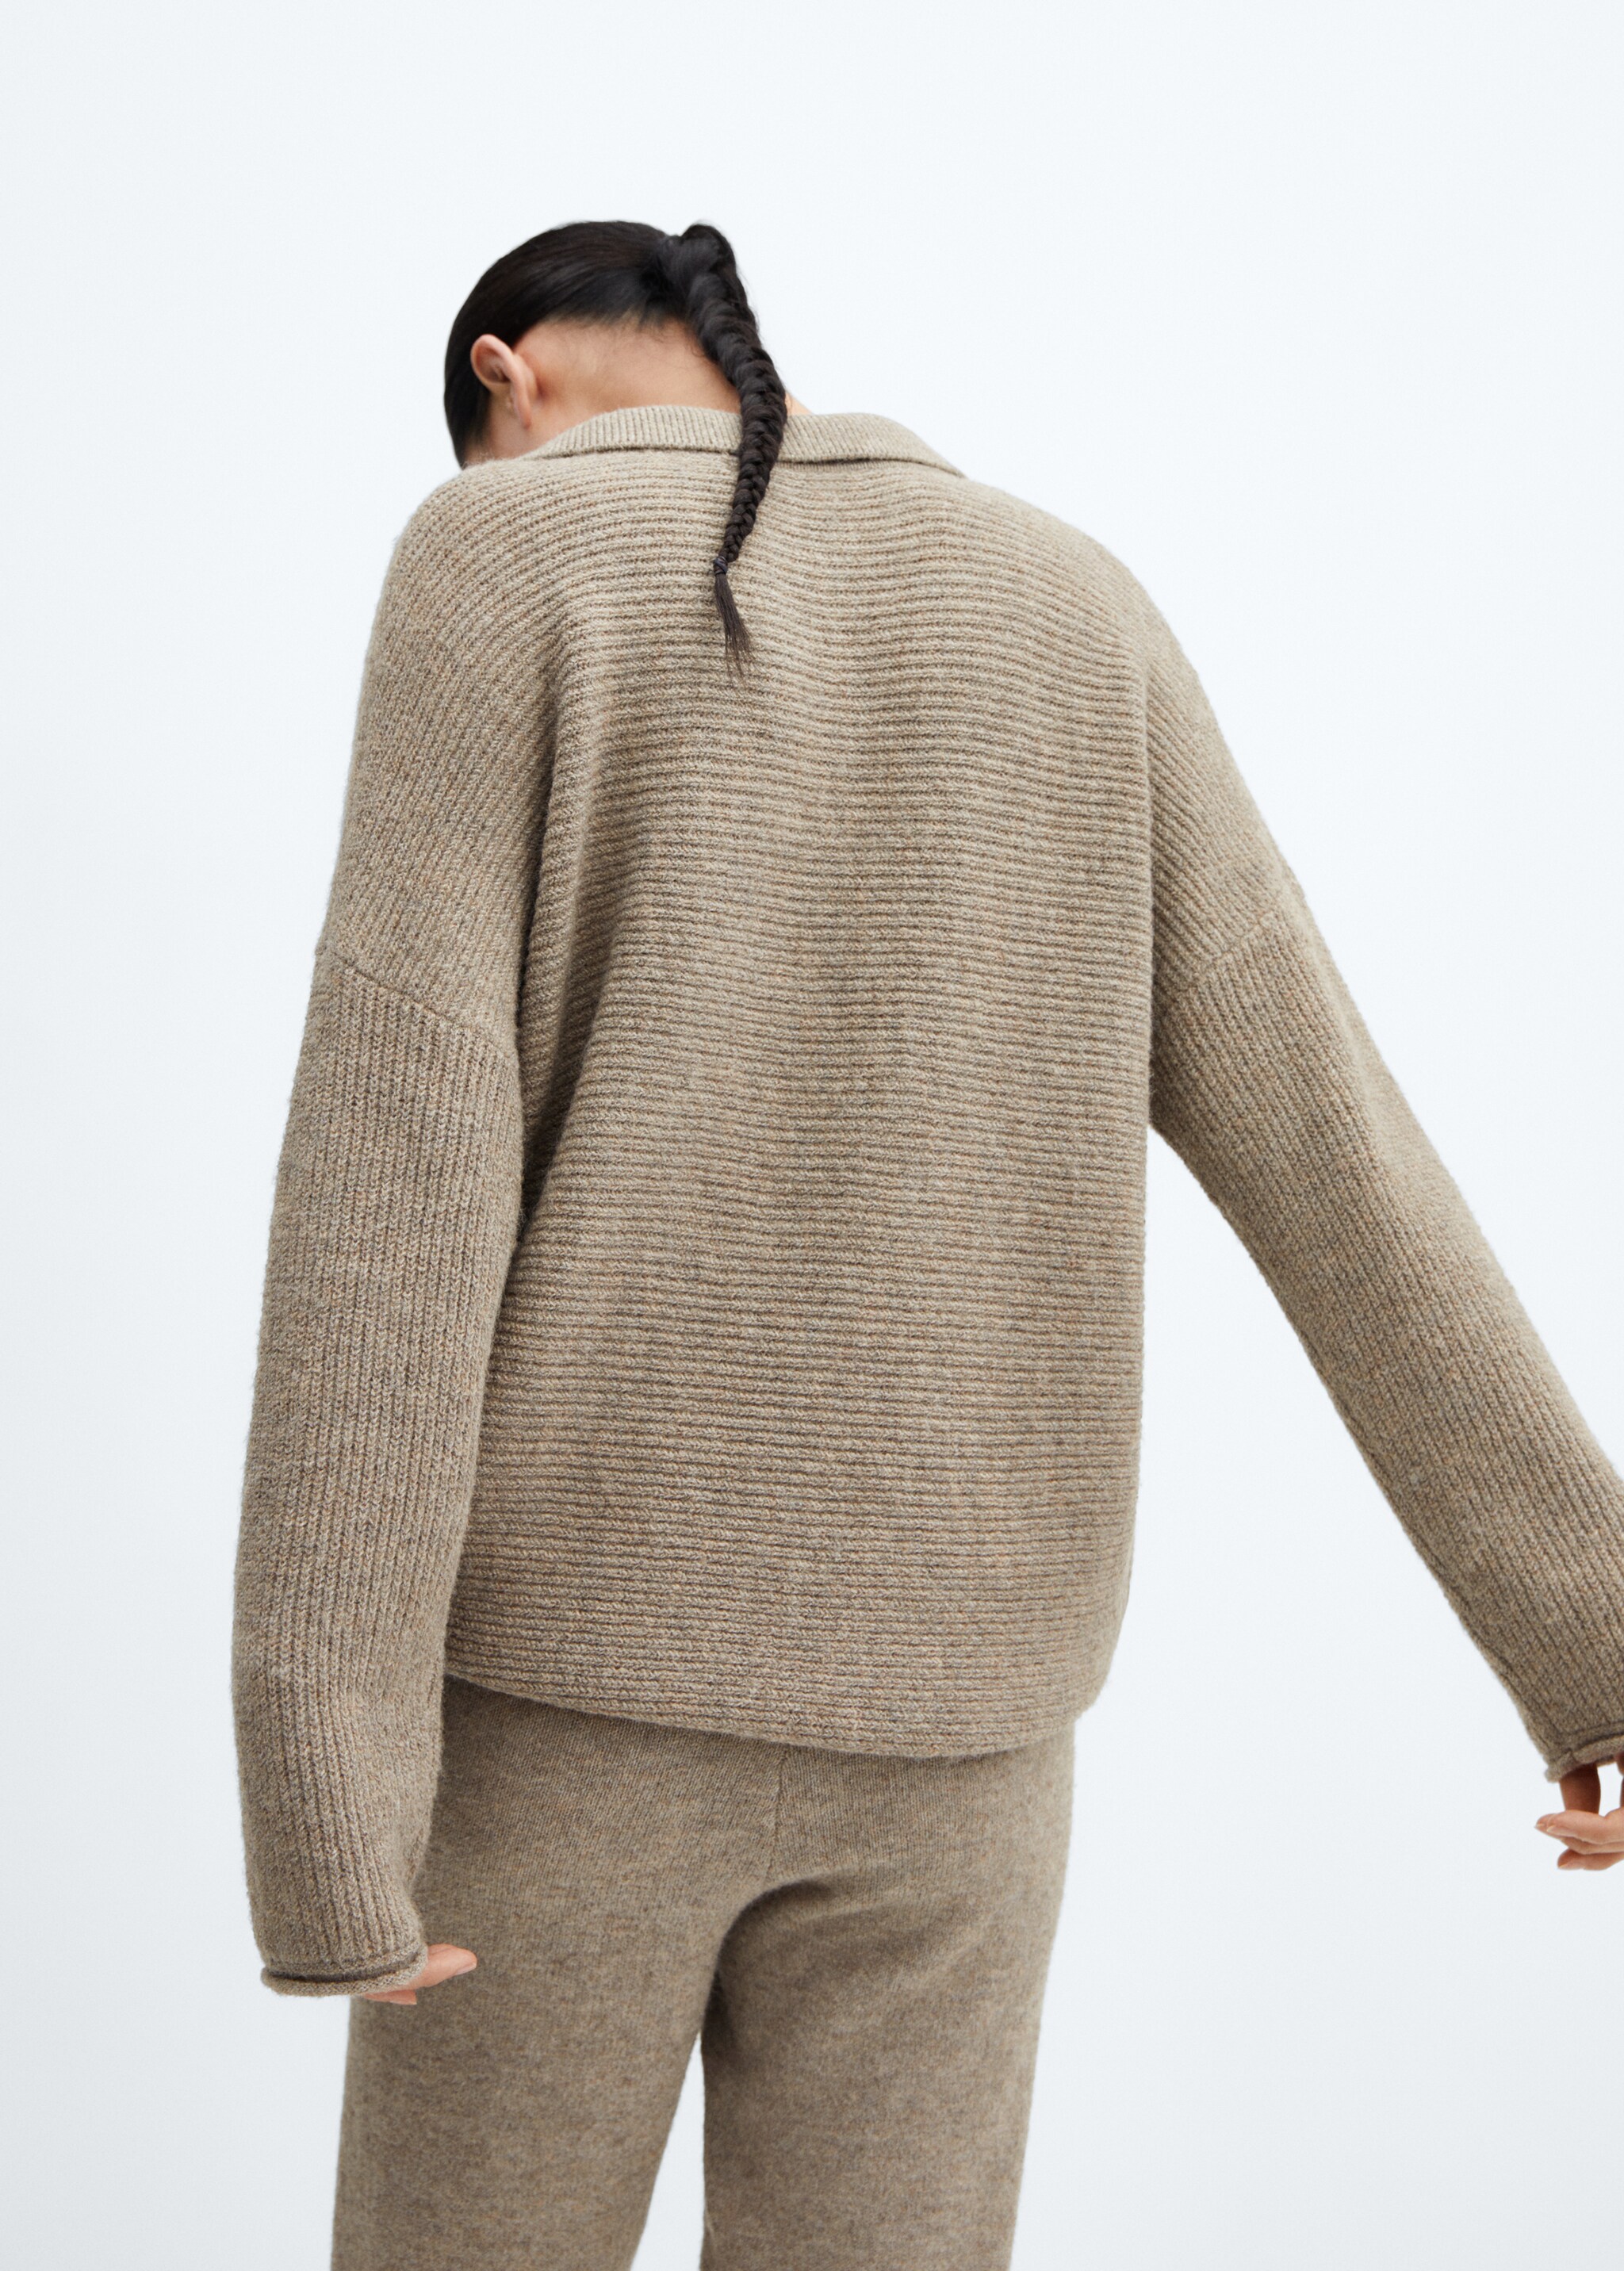 Oversized knit sweater - Spatele articolului